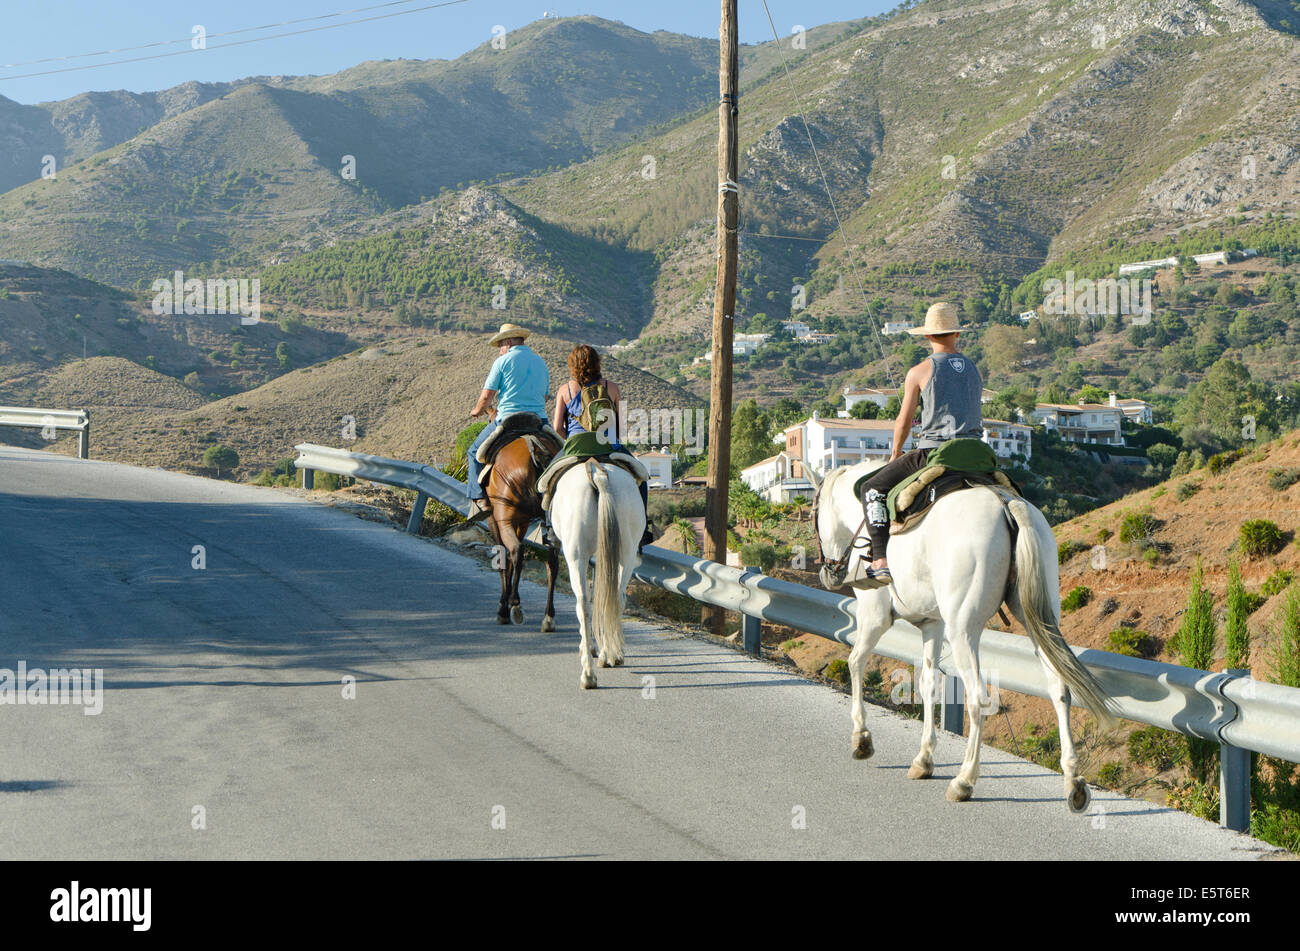 Horseback riding trip through the mountains in Southern Spain, Mijas, Malaga. Stock Photo